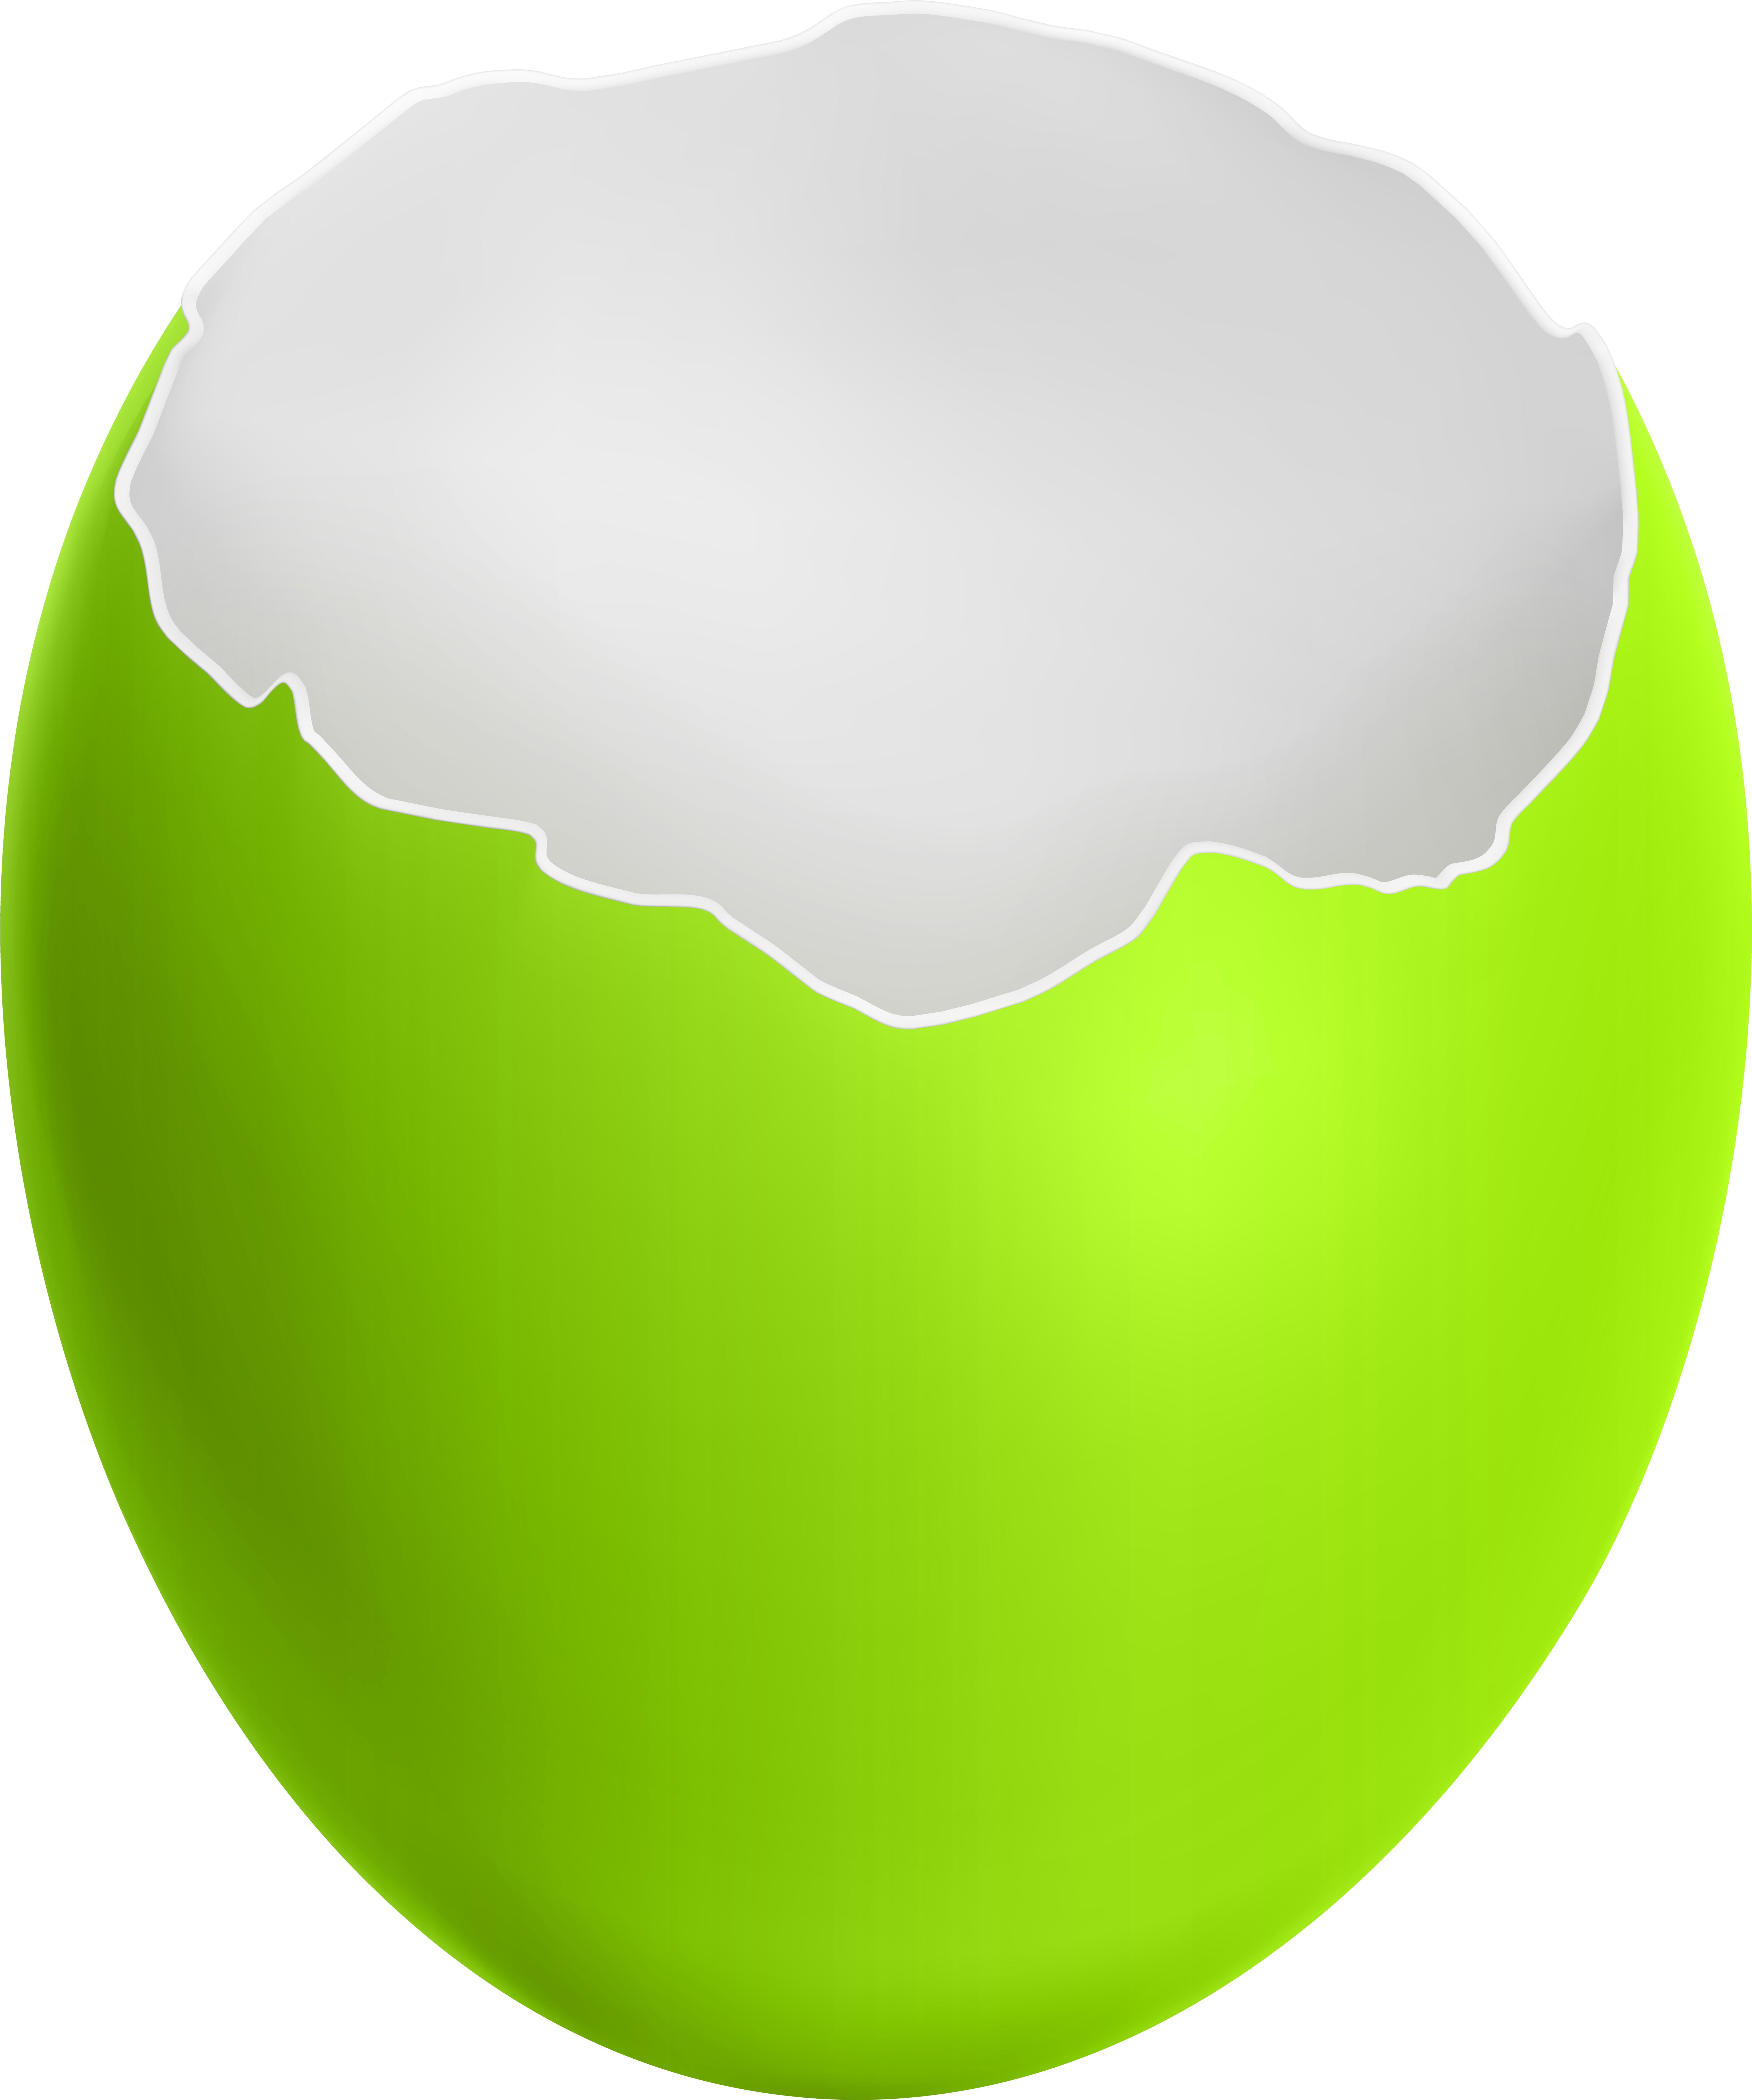 Broken Easter Egg Green Clip Art Image - Png Download (6608x7919), Png Download